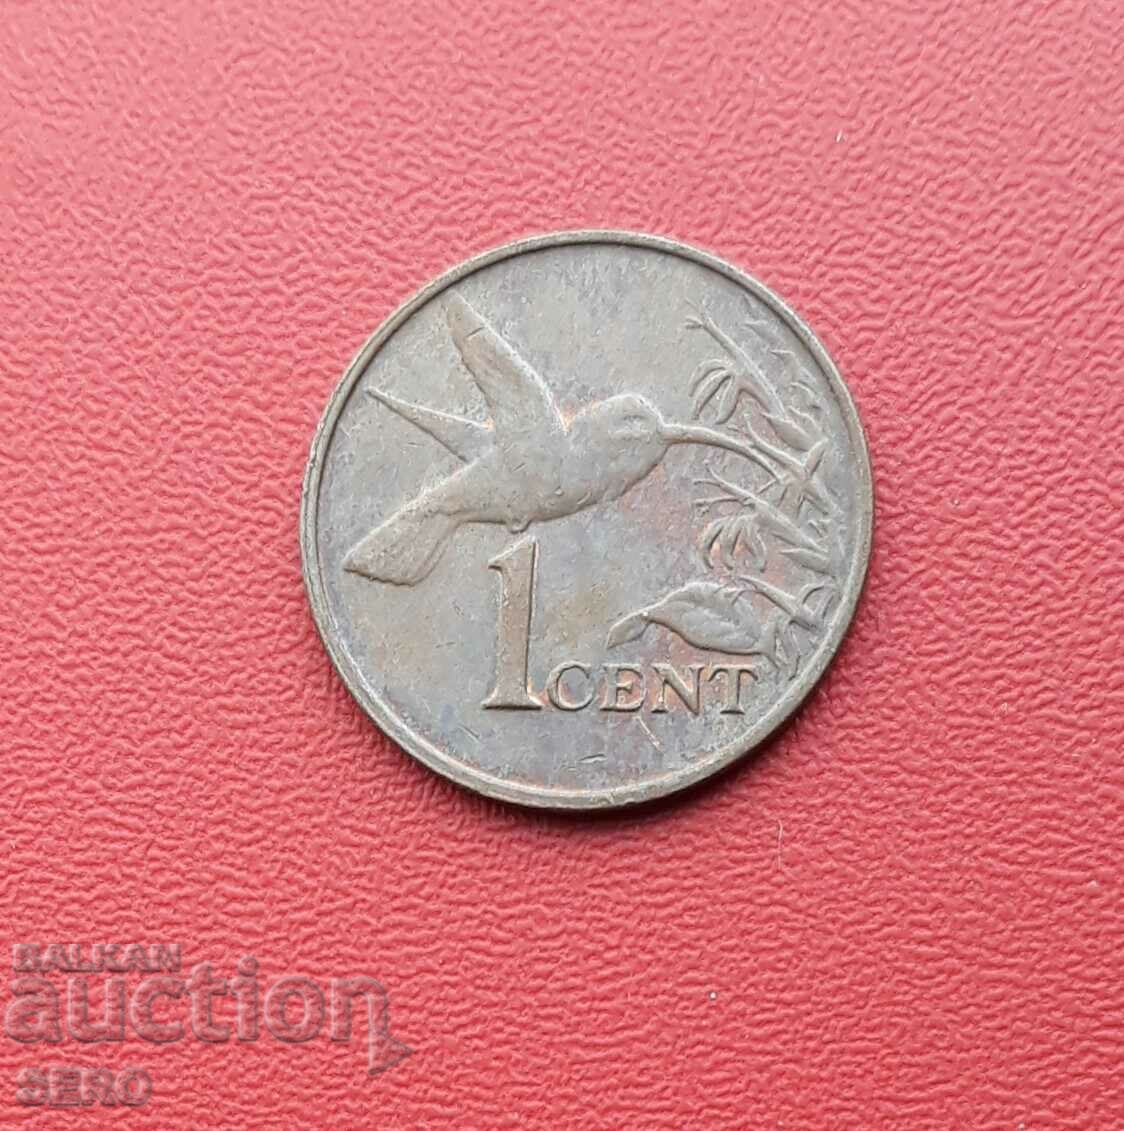 Trinidad and Tobago Islands - 1 cent 2003